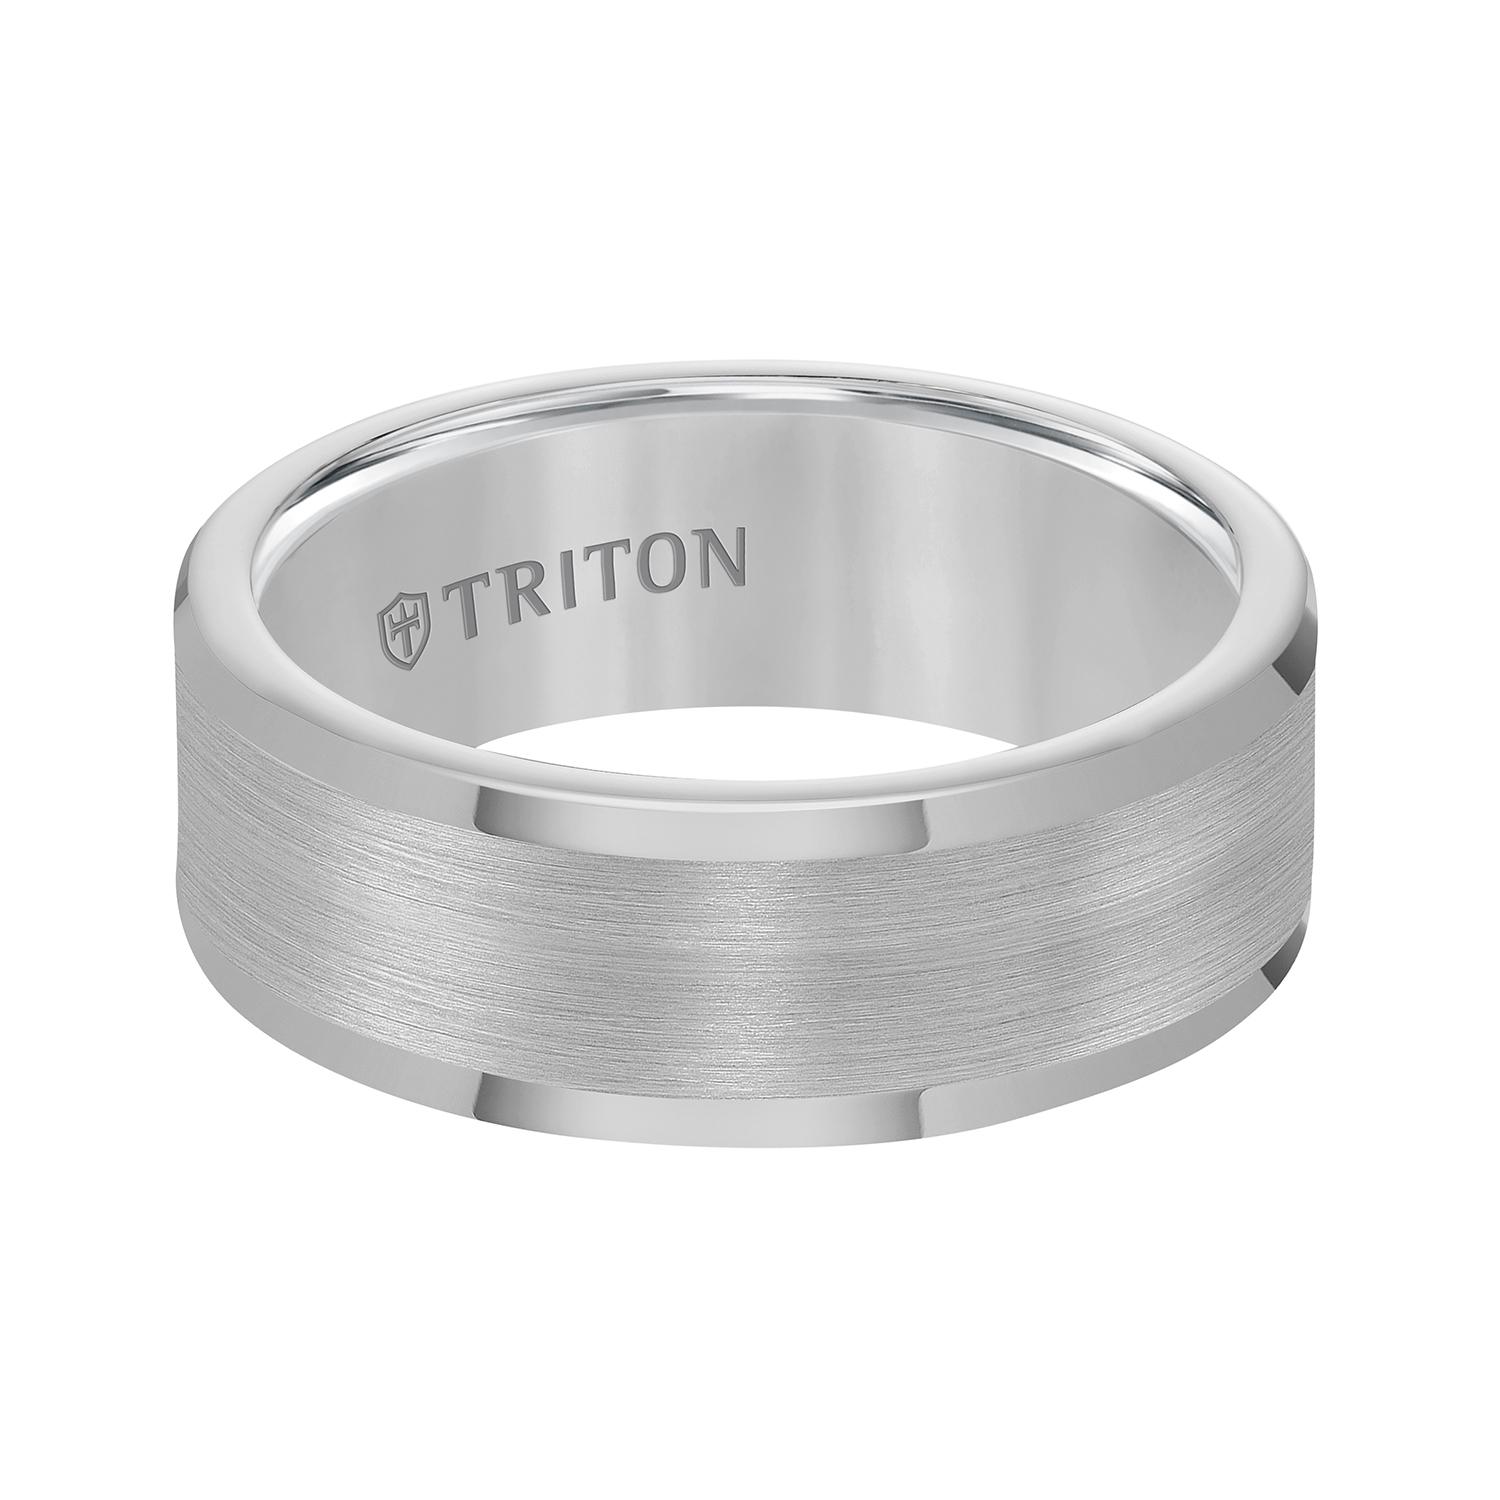 Gents Triton Tungsten Band